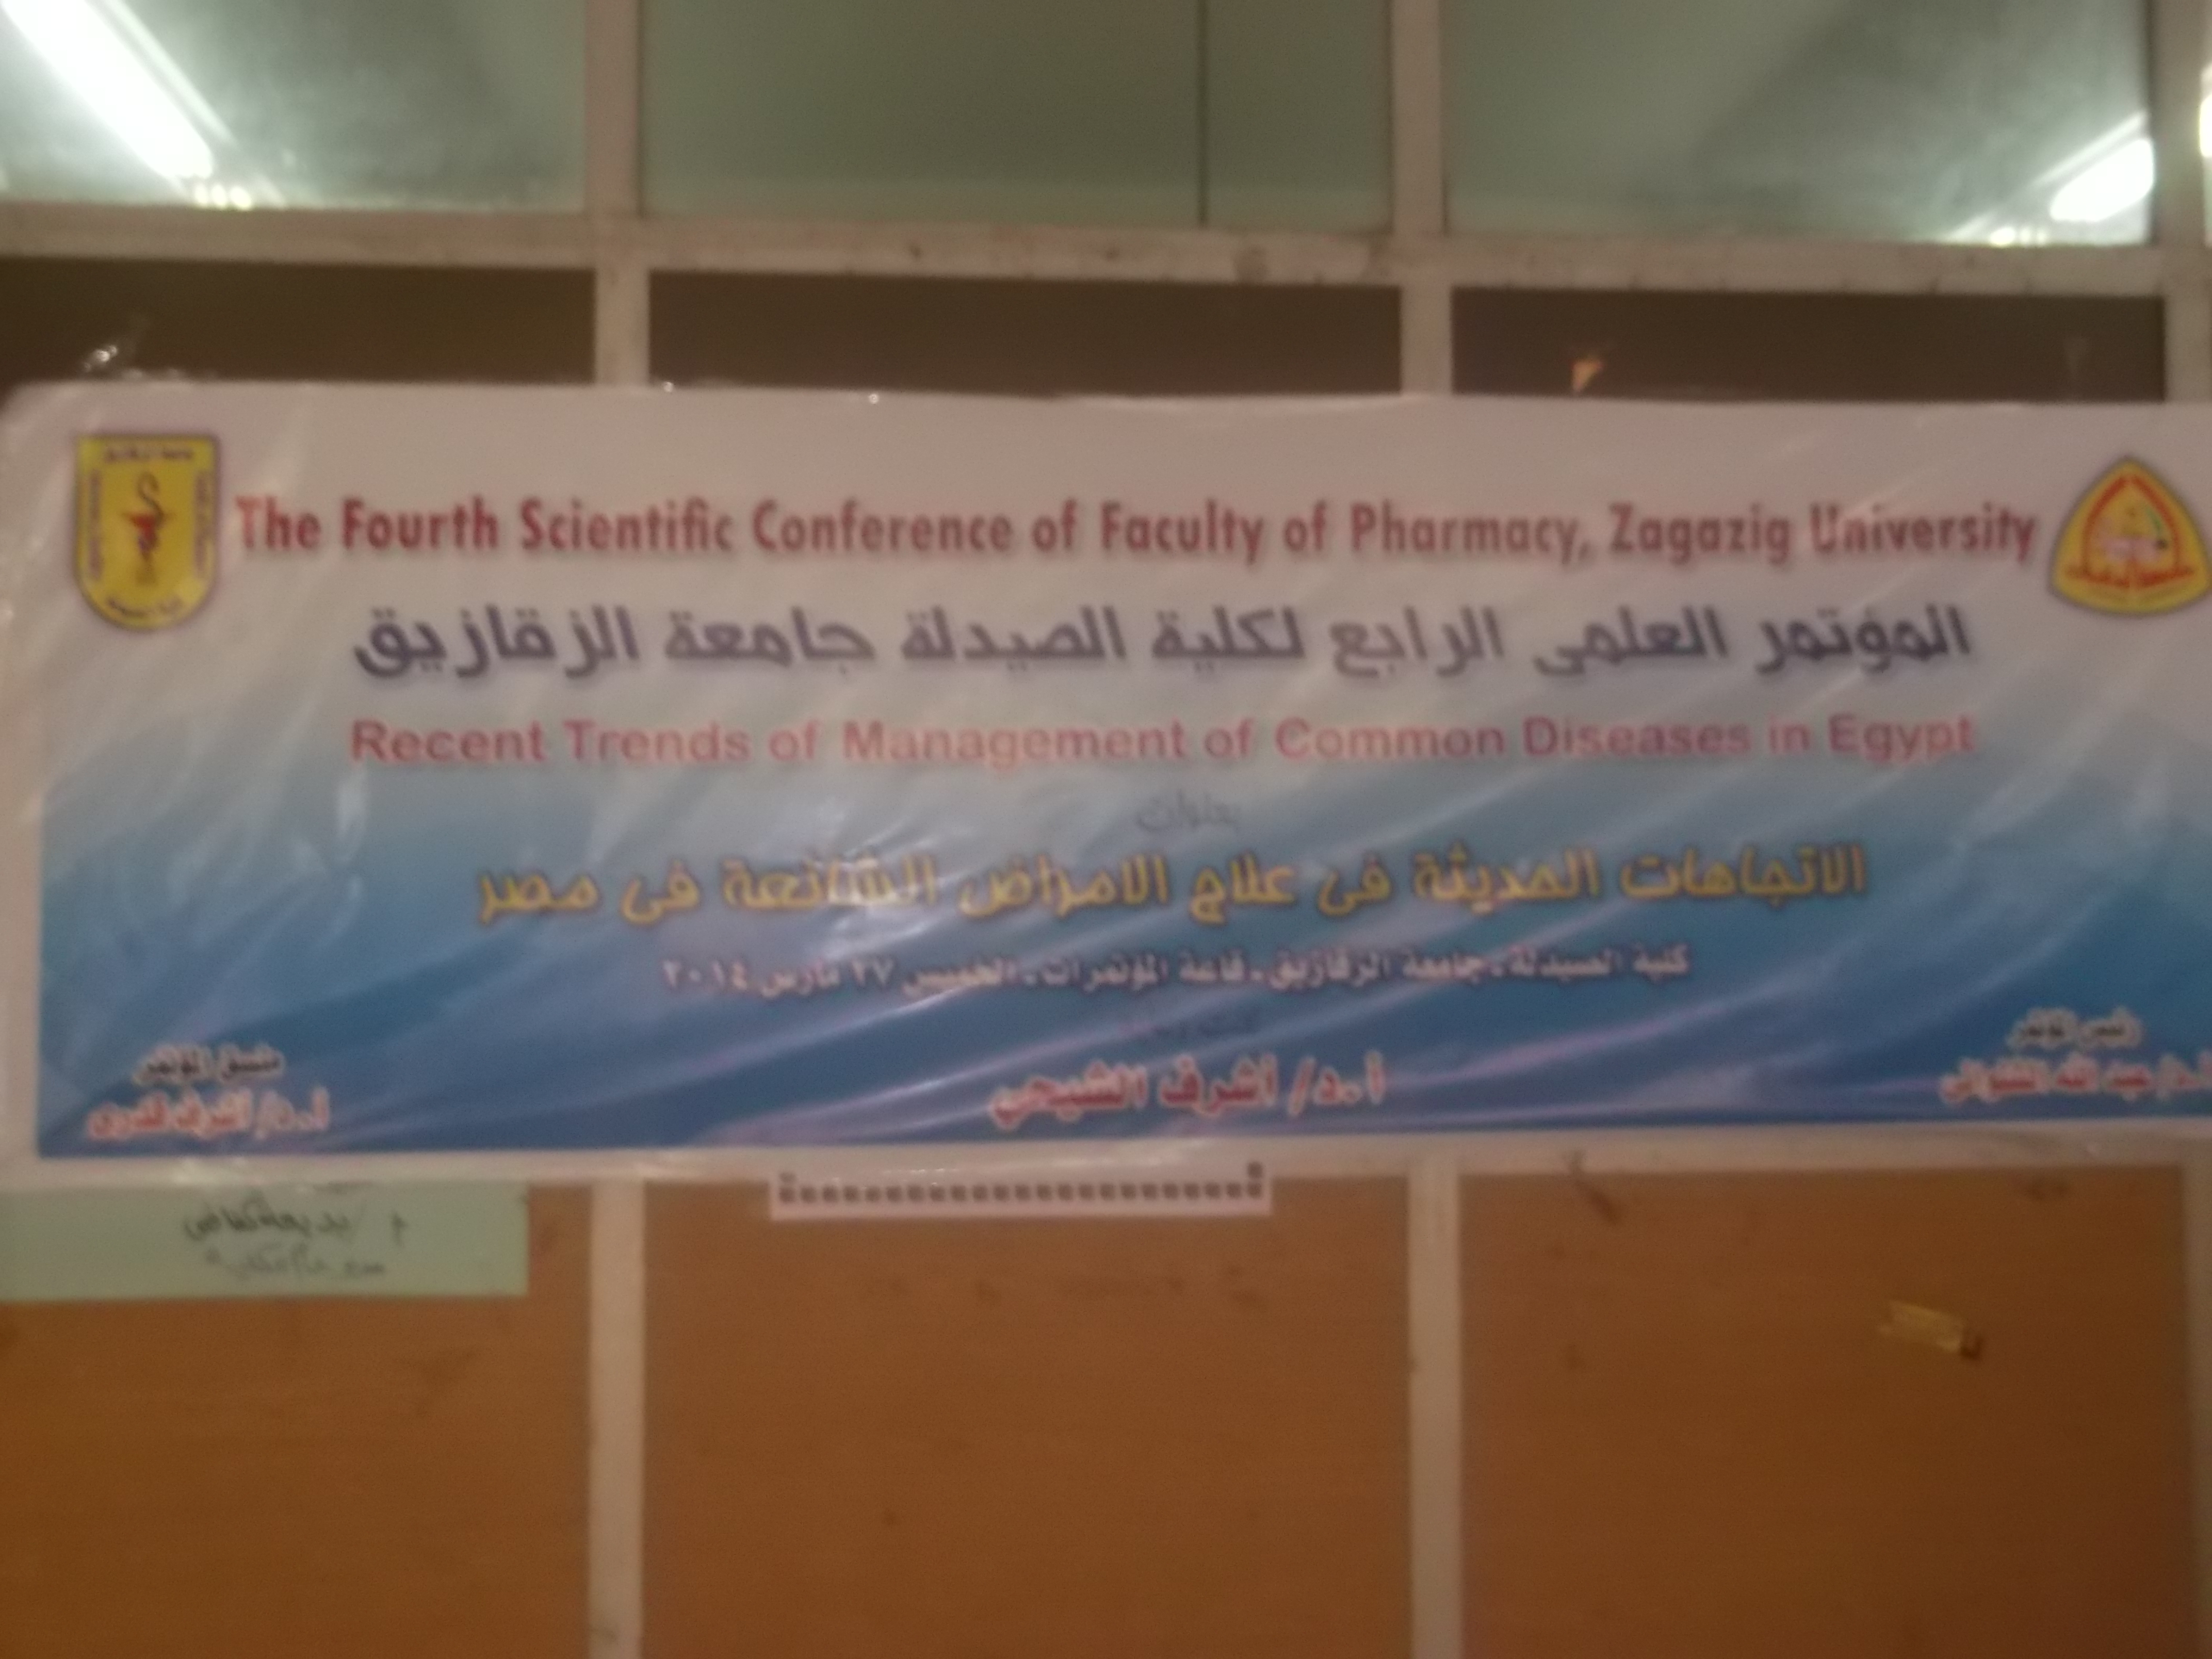 المؤتمر العلمى الرابع لكلية الصيدلة جامعة الزقازيق يوم  27 مارس 2014